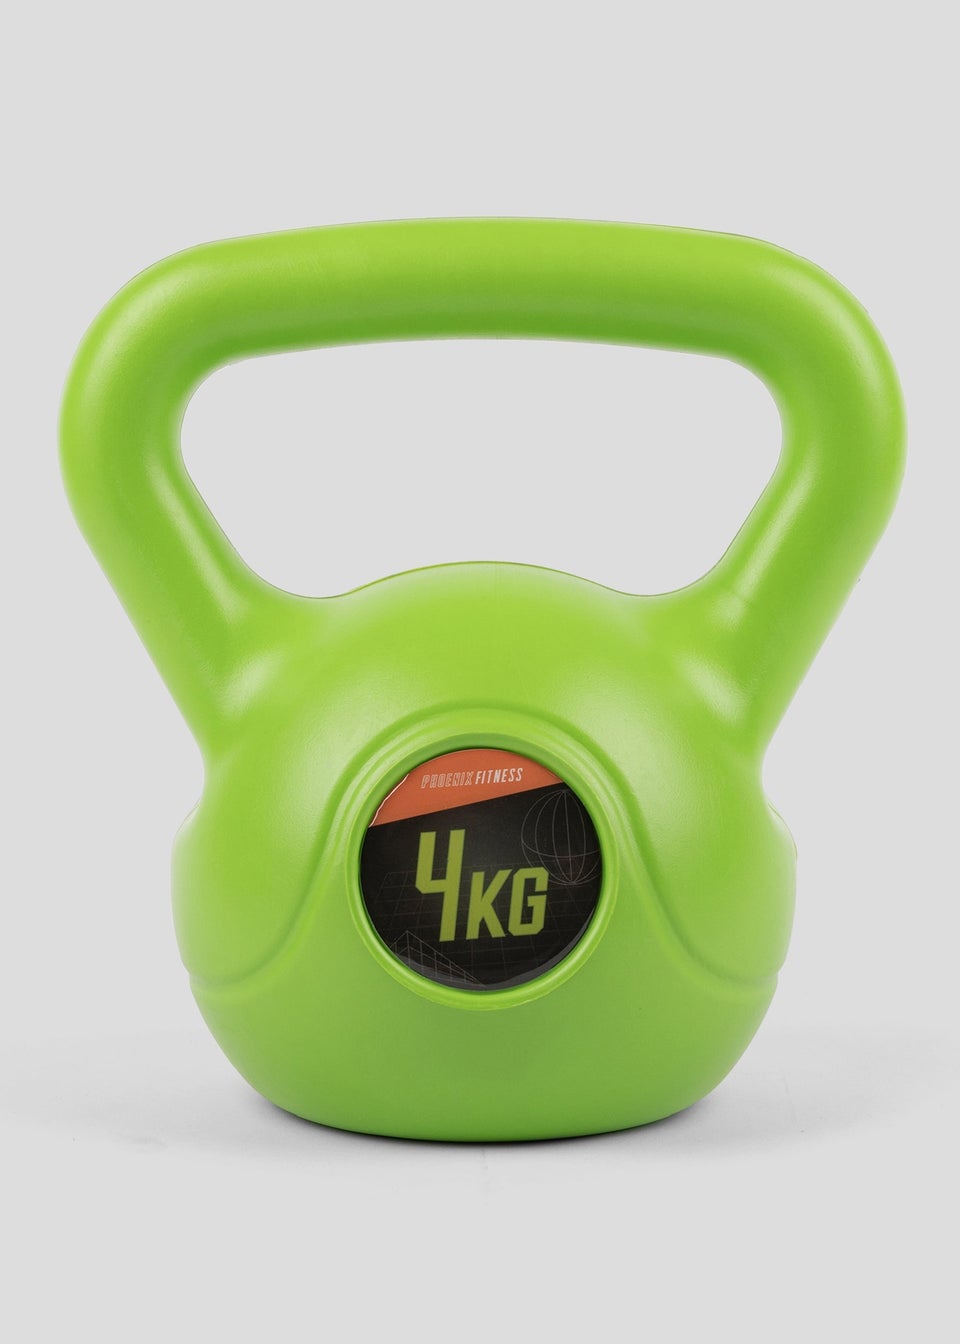 Phoenix Fitness 4Kg Kettle Bell